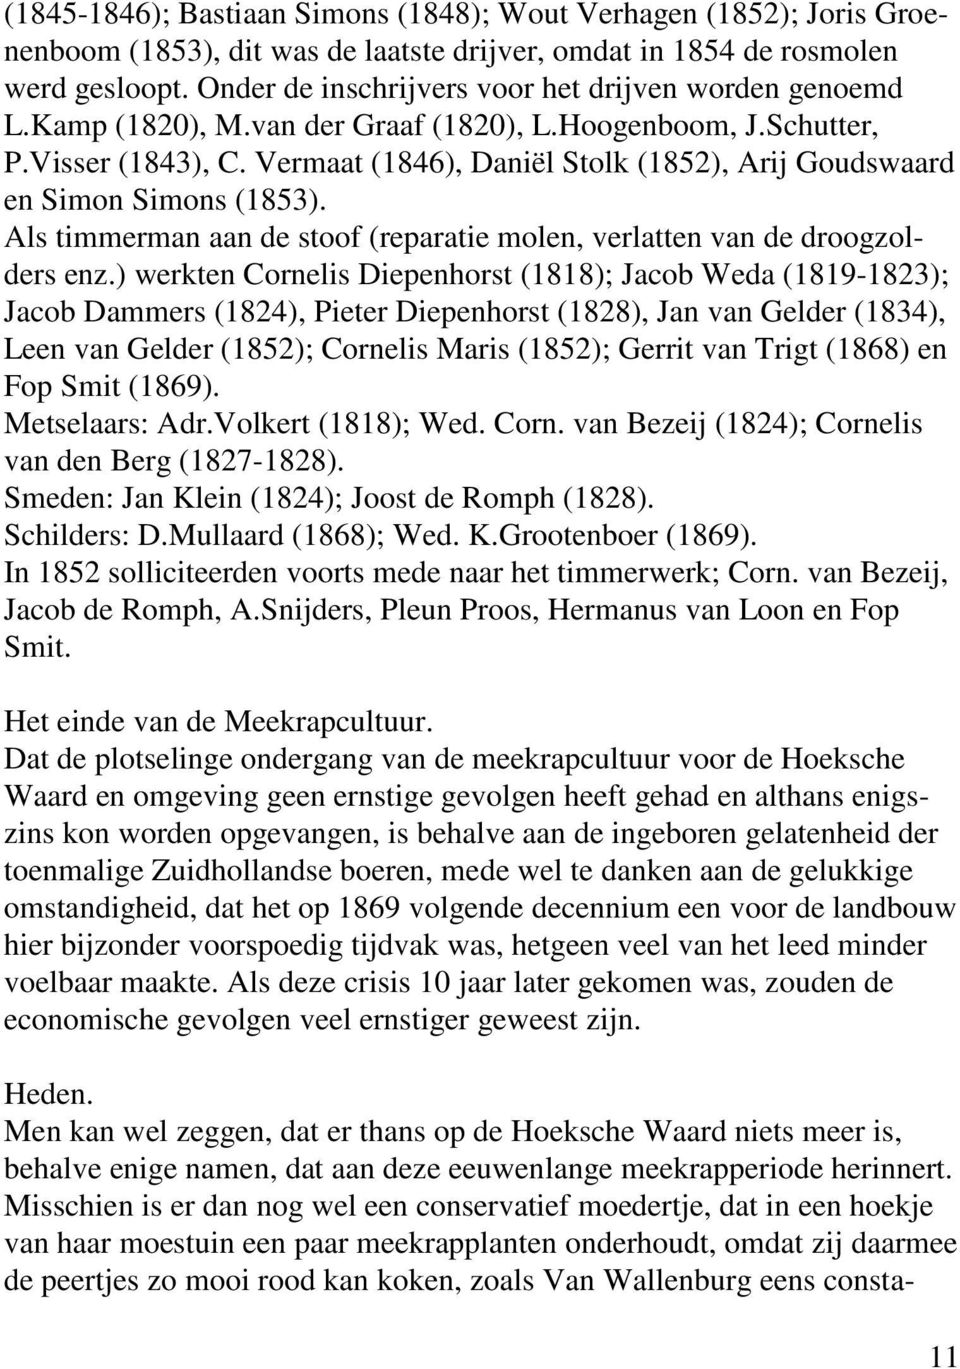 Vermaat (1846), Daniël Stolk (1852), Arij Goudswaard en Simon Simons (1853). Als timmerman aan de stoof (reparatie molen, verlatten van de droogzolders enz.